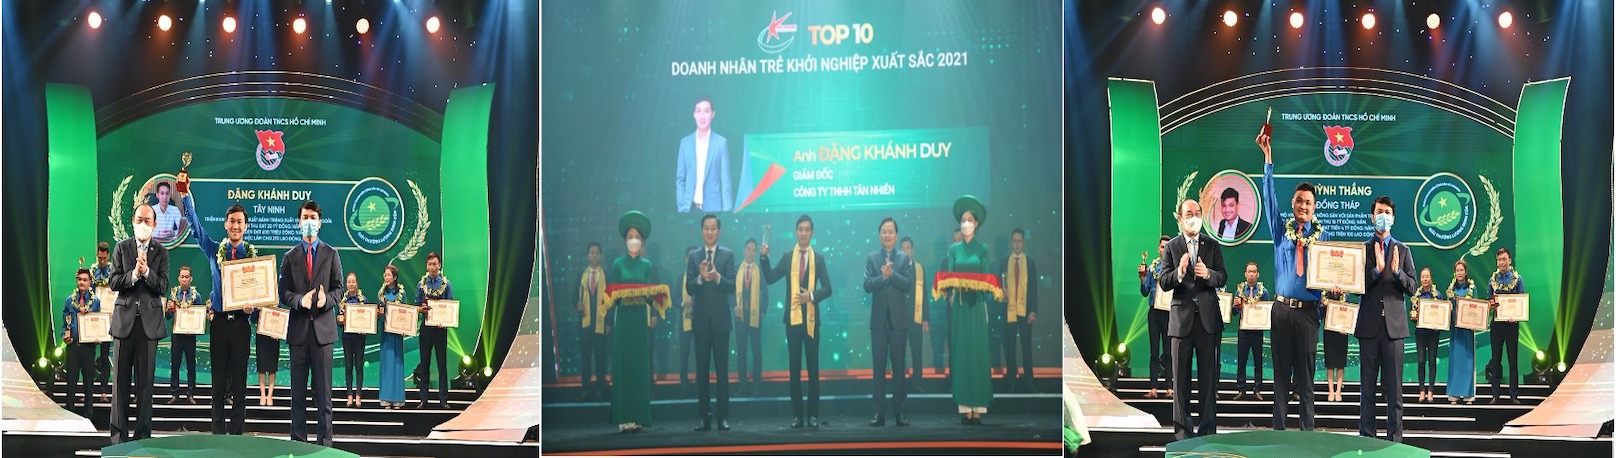 Anh Đặng Khánh Duy - Giám đốc Công ty TNHH Tân Nhiên (hình trái và giữa) và anh Huỳnh Thắng - Giám đốc Công ty TNHH MTV Huỳnh Thắng (hình phải) tự hứa sẽ tiếp tục phấn đấu để luôn xứng đáng với niềm vinh dự đã được trao.